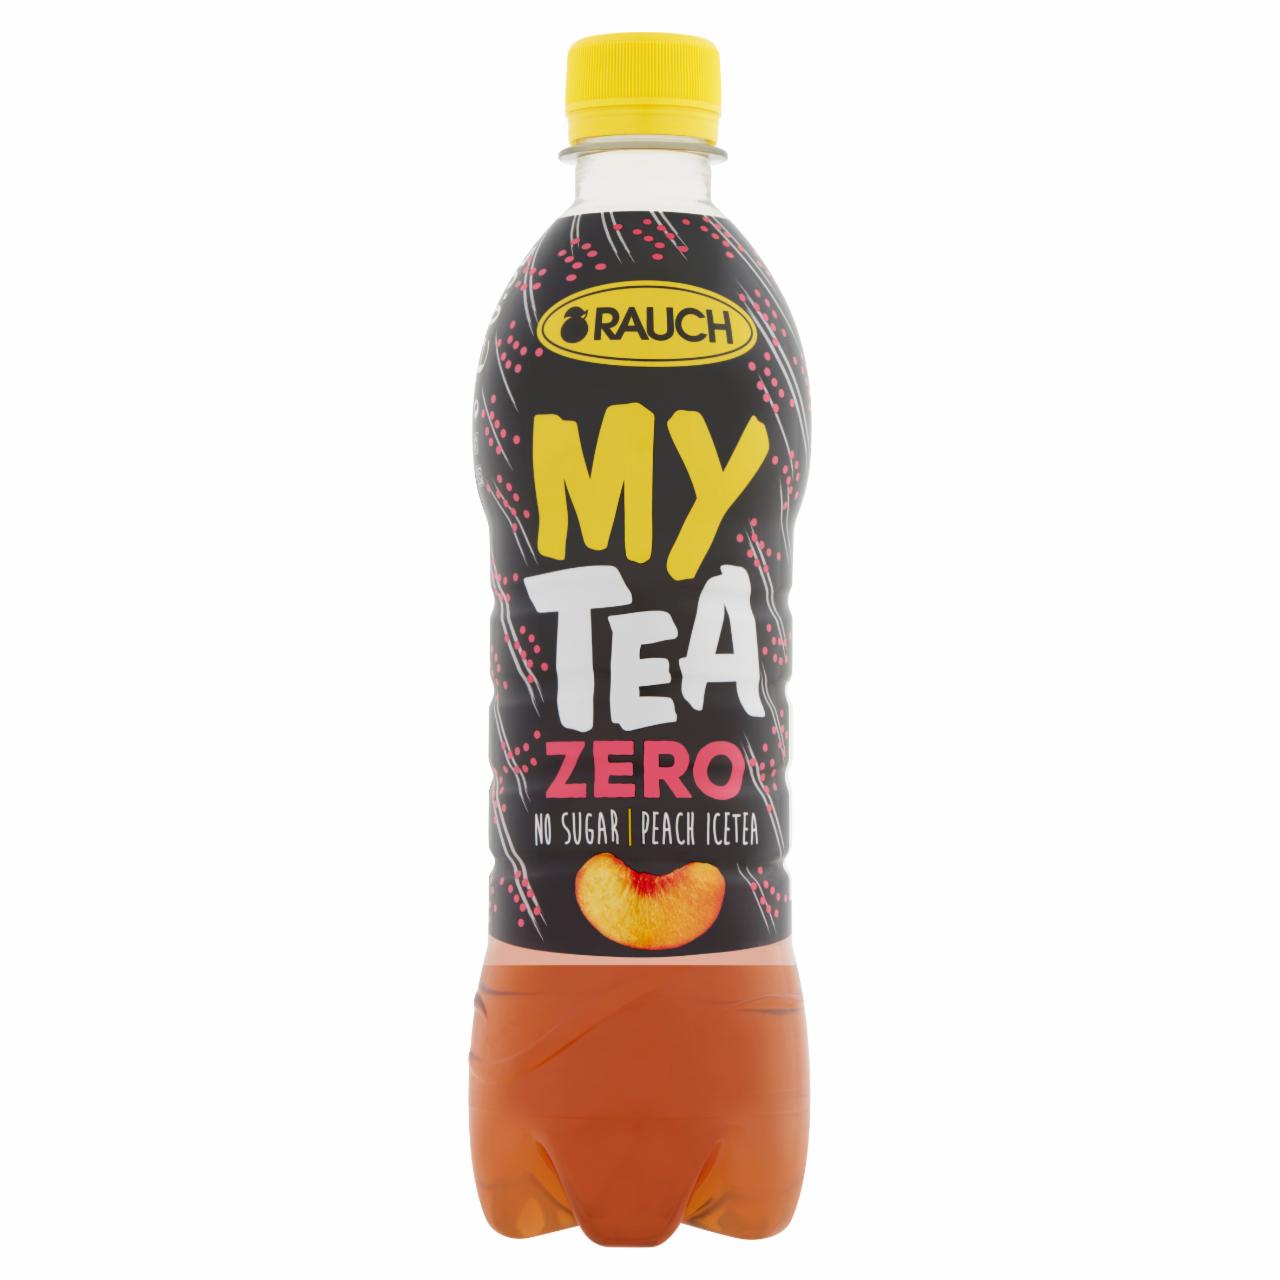 Képek - Rauch My Tea Zero cukormentes ice tea őszibarackos üdítőital fekete teából, édesítőszerekkel 0,5 l